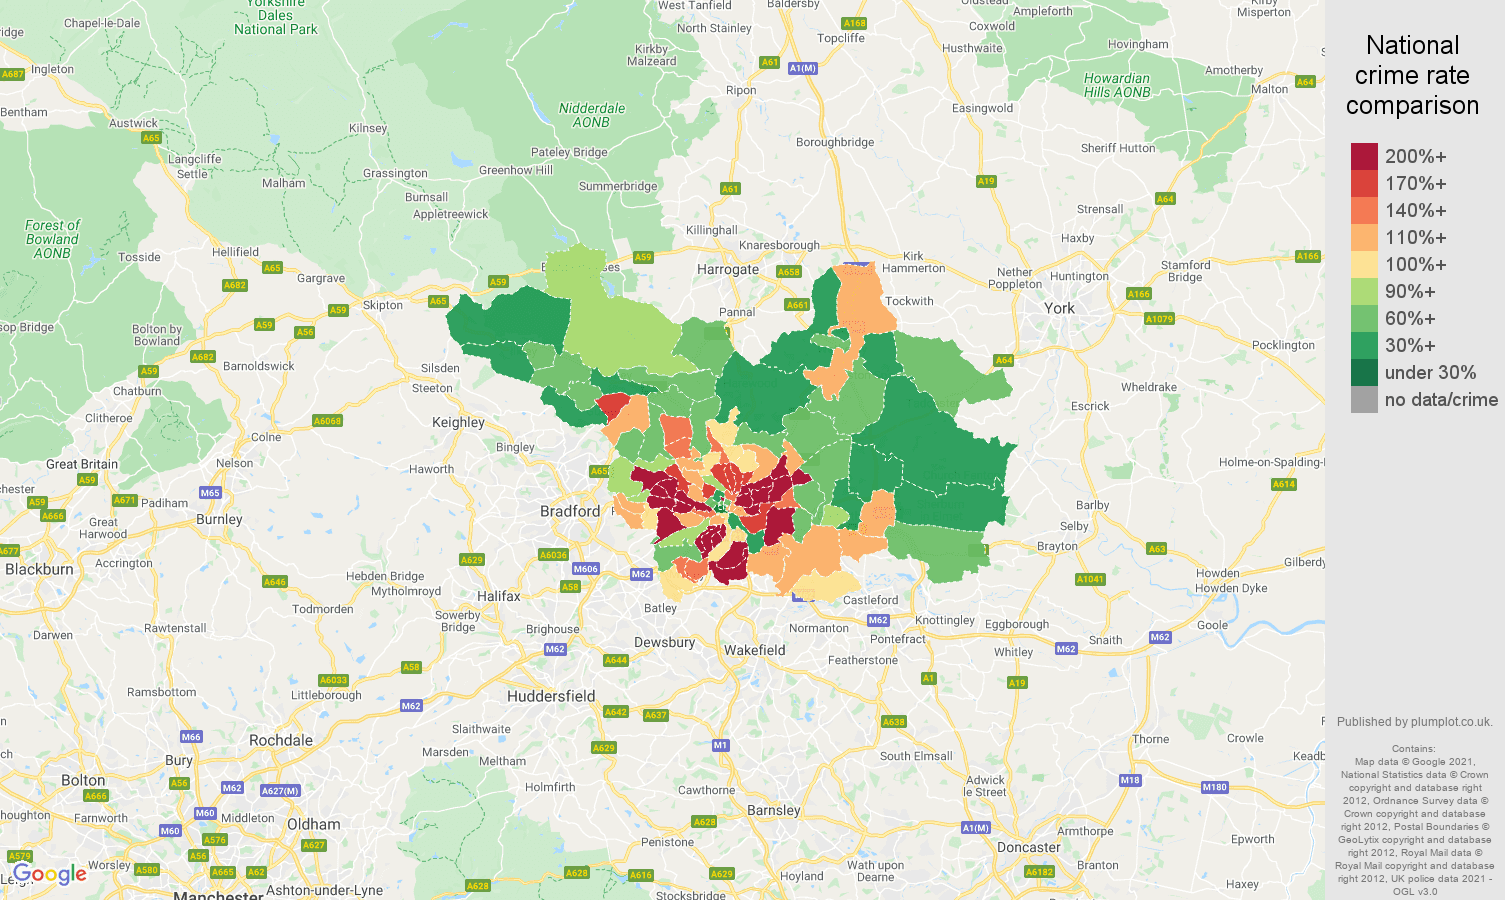 Leeds violent crime rate comparison map